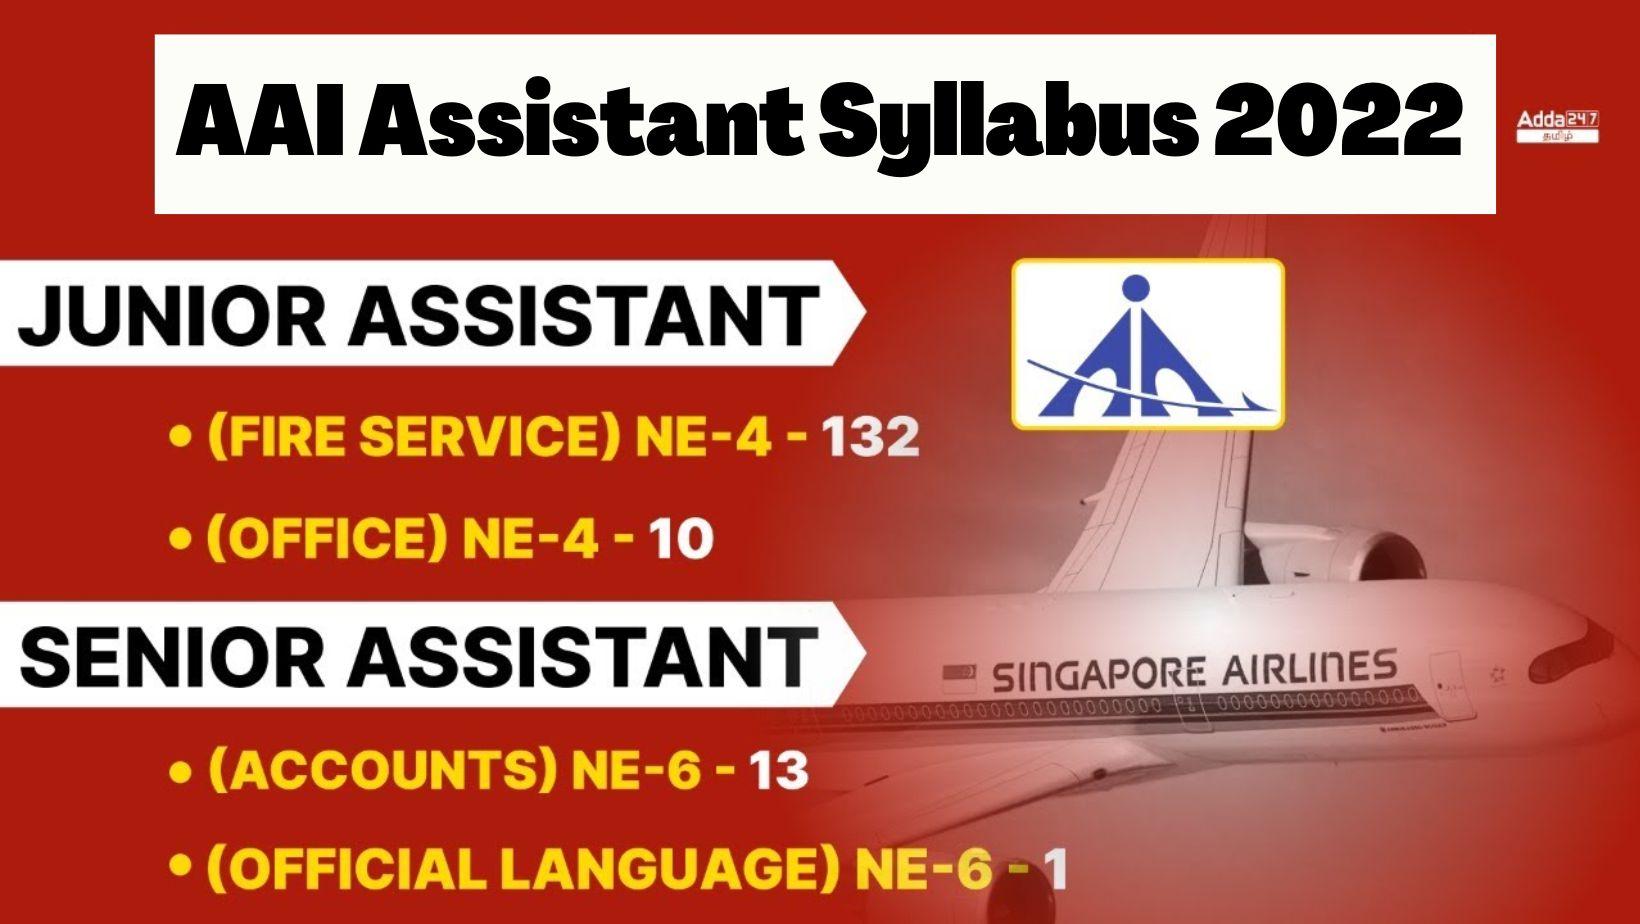 AAI Assistant Syllabus 2022